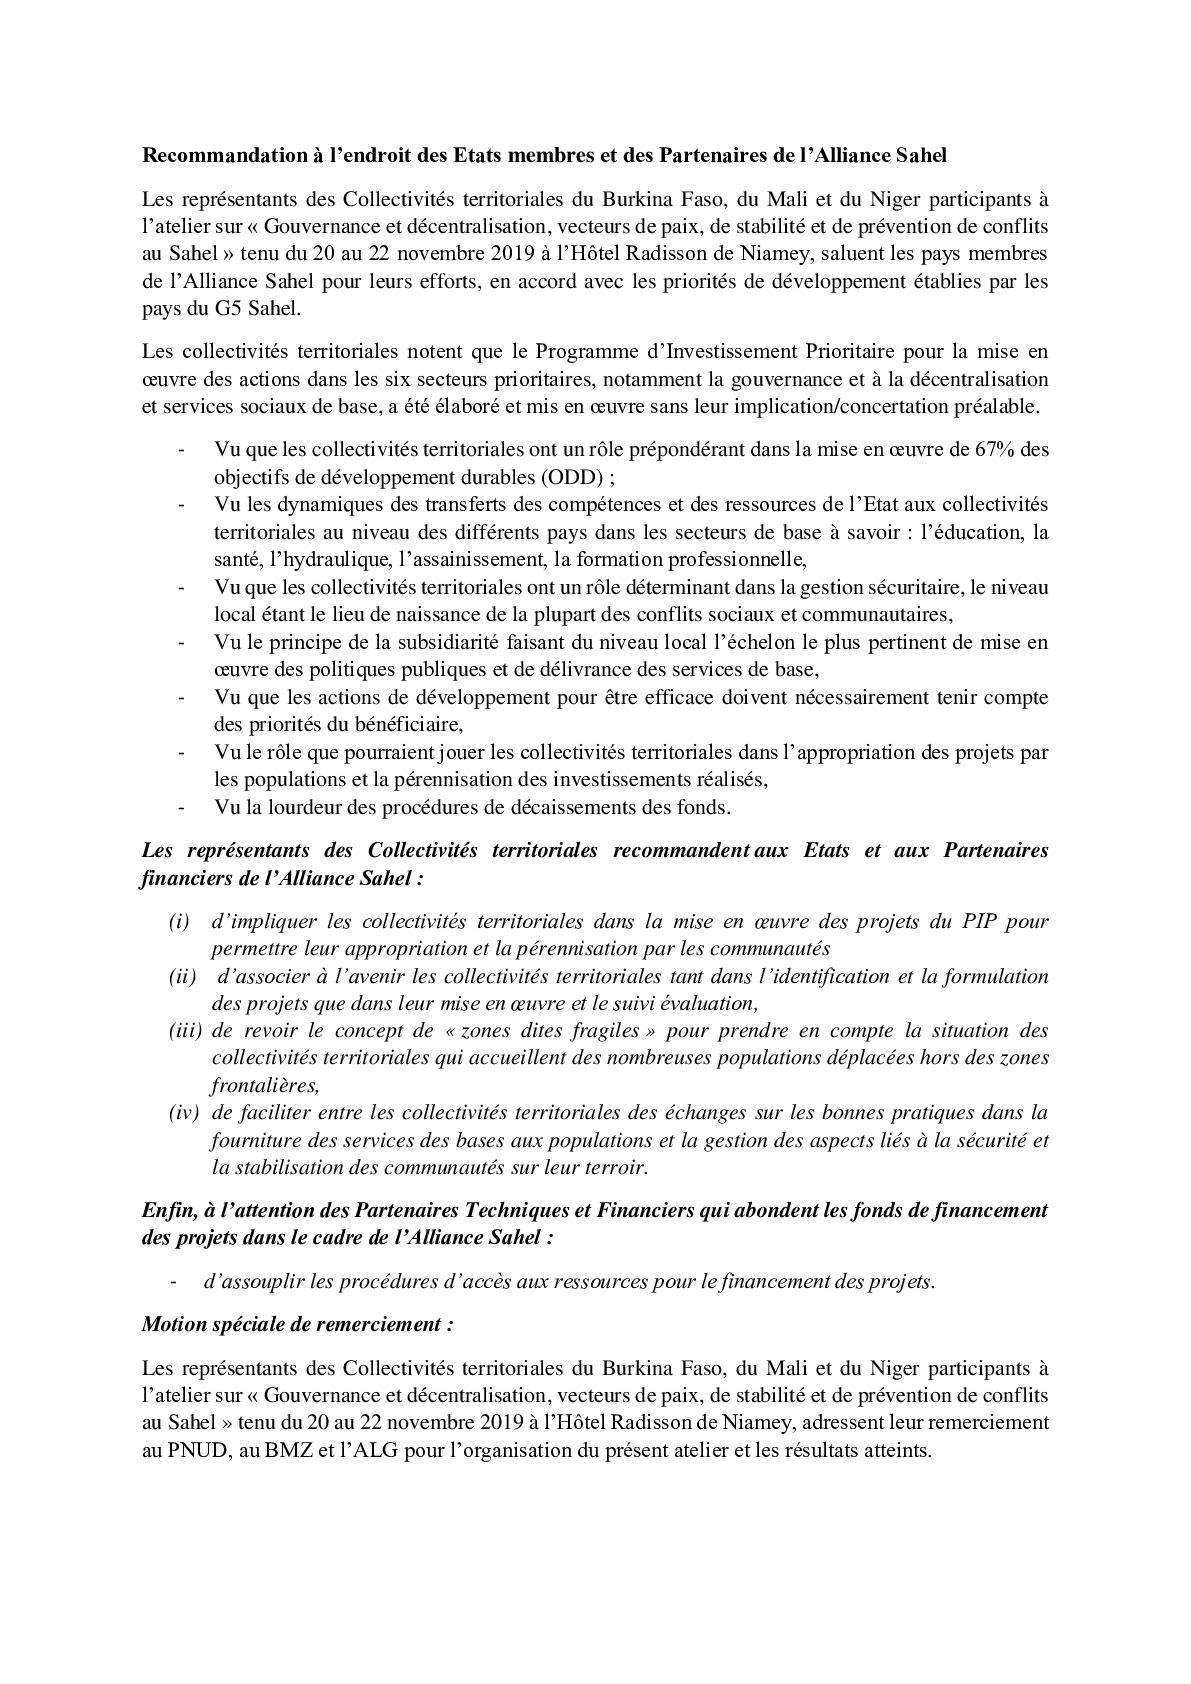 Recommandation des Collectivités Territoriales à l’endroit des Etats membres et des Partenaires de l’Alliance Sahel